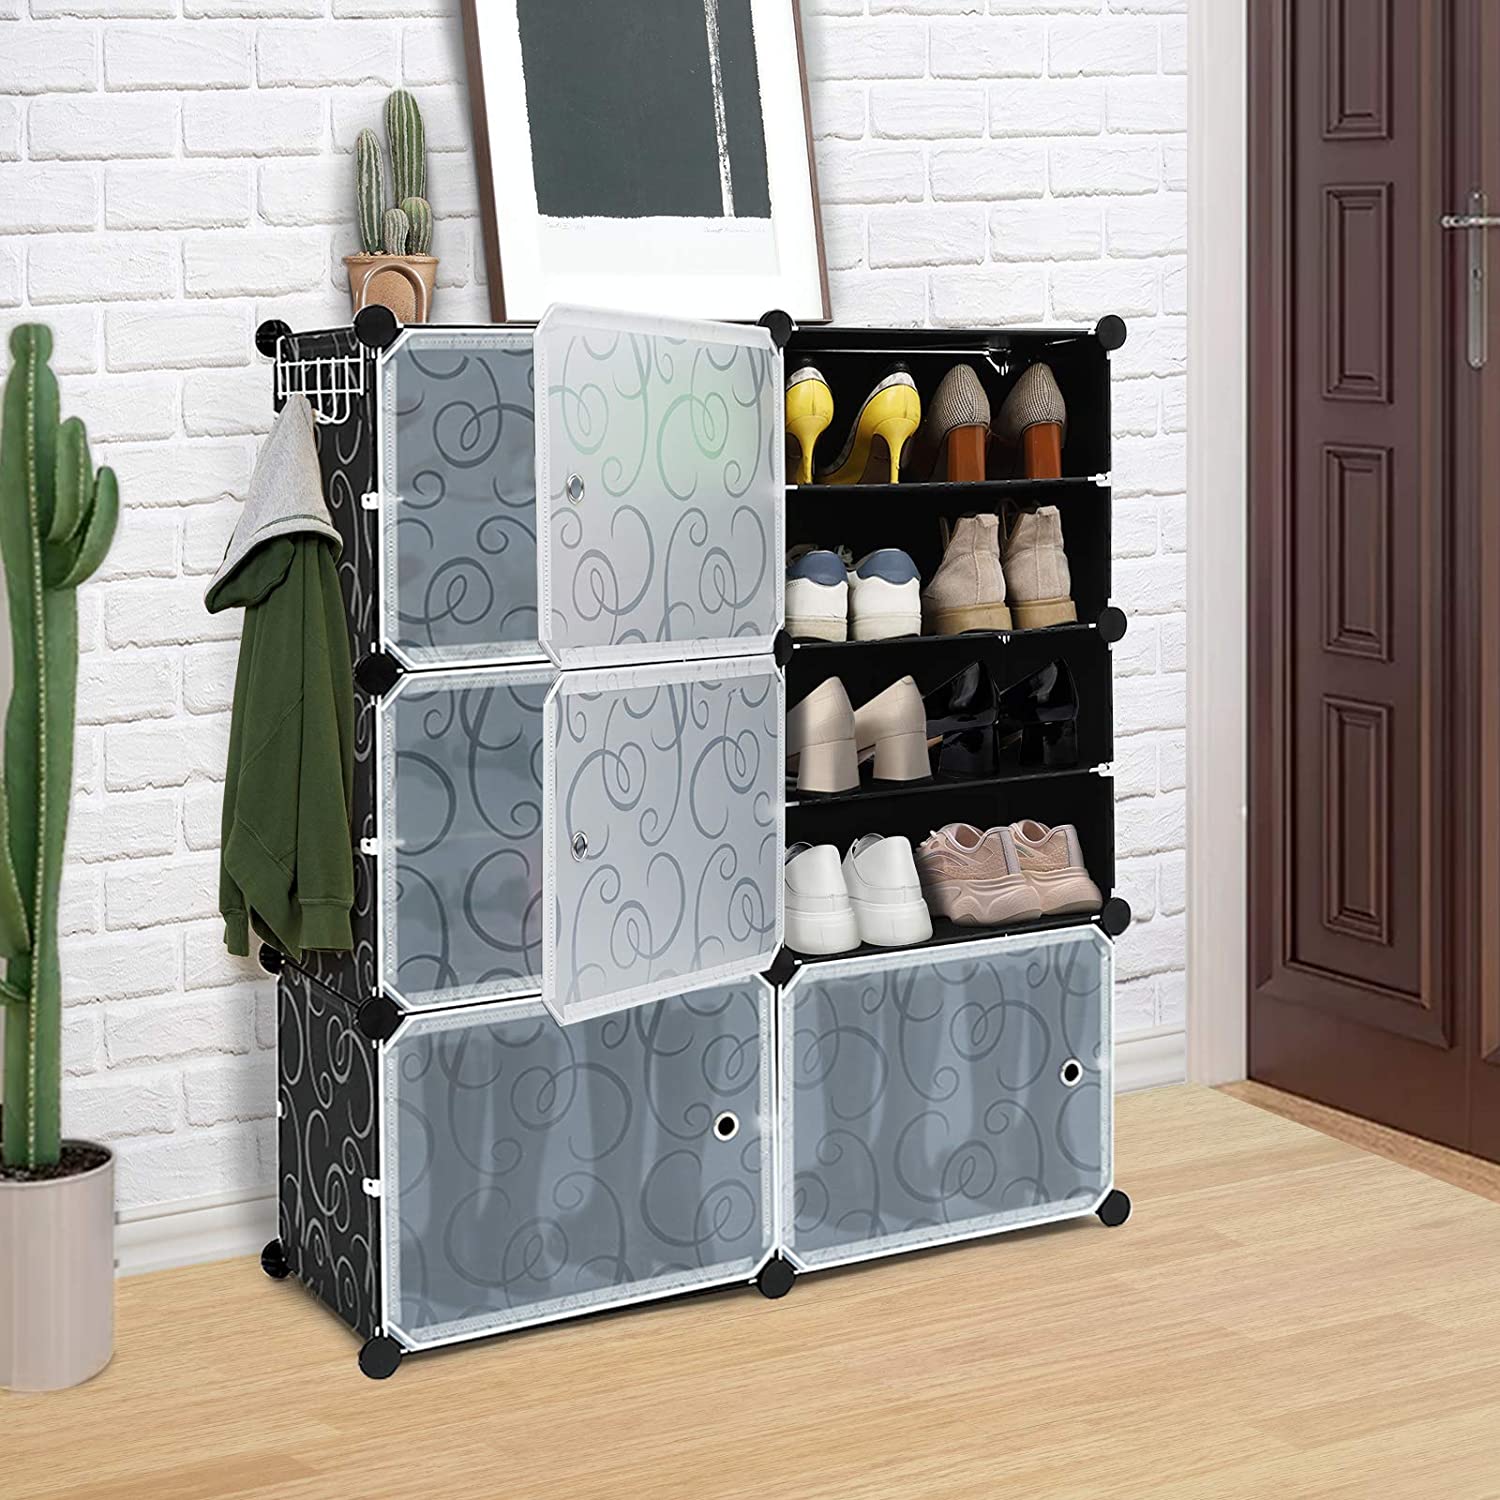 Shoe Cabinet for Entryway, 6-Tier Shoe Rack with Doors & 23